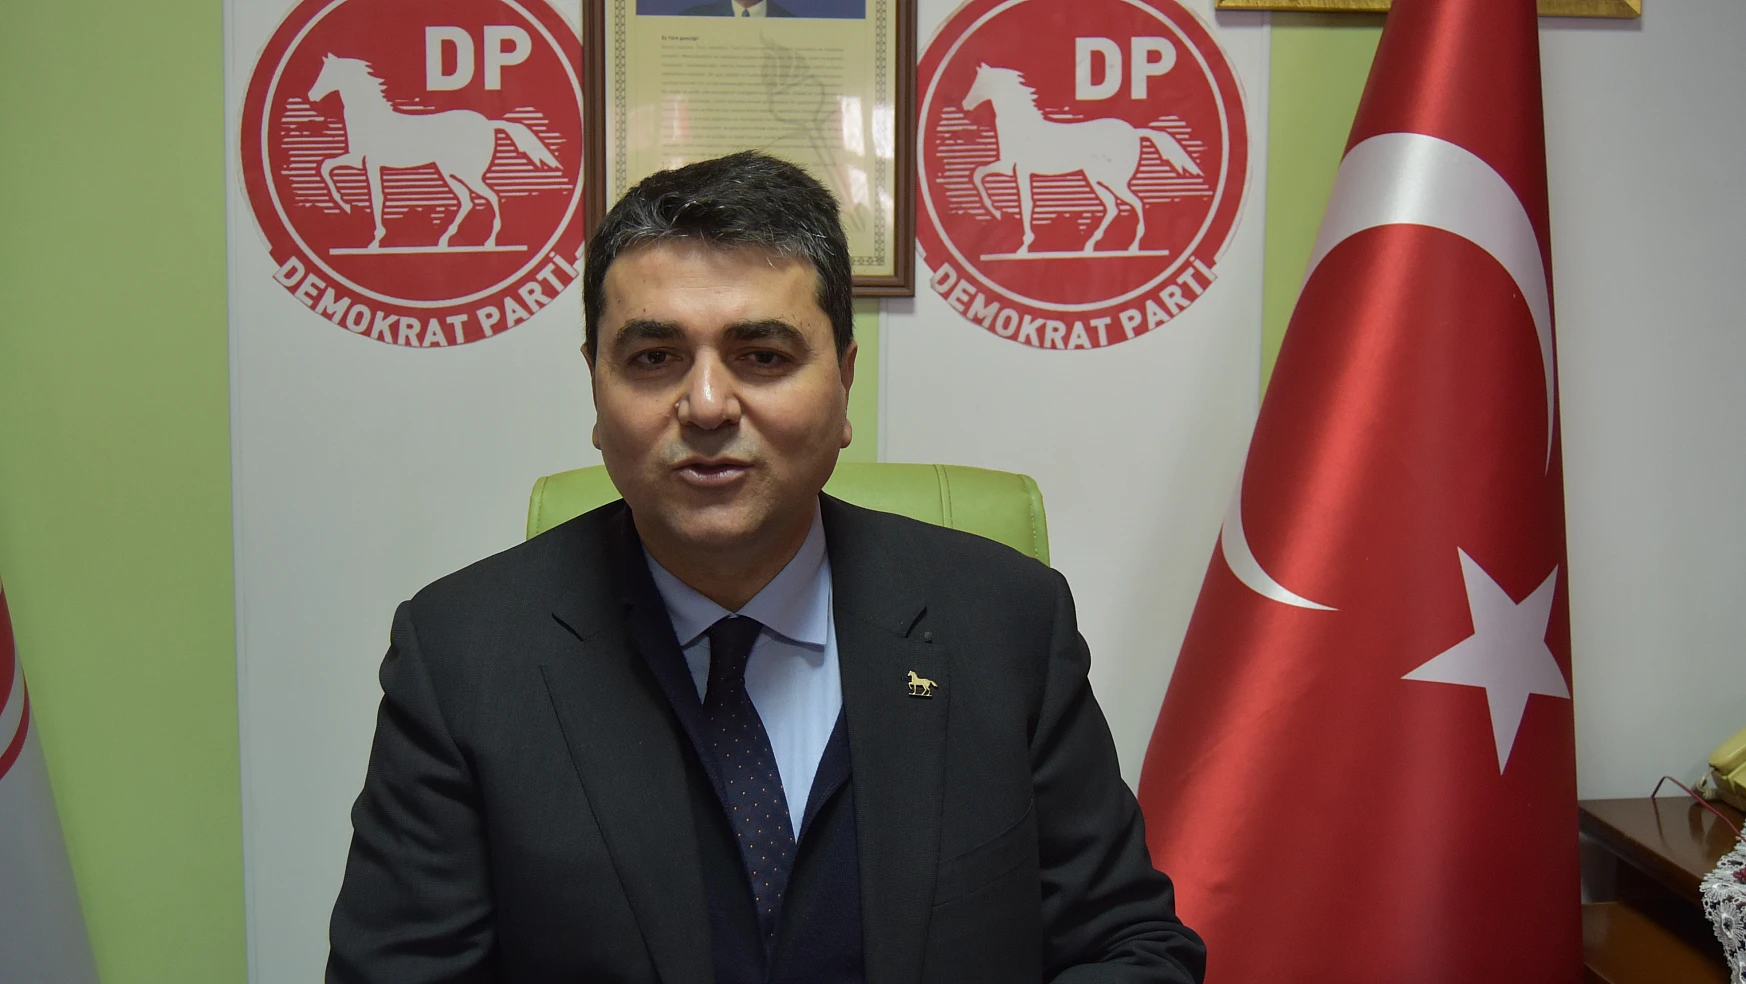 DP Genel Başkanı Uysal, 'Türkiye İklimi ortaya çıkarmalıyız'